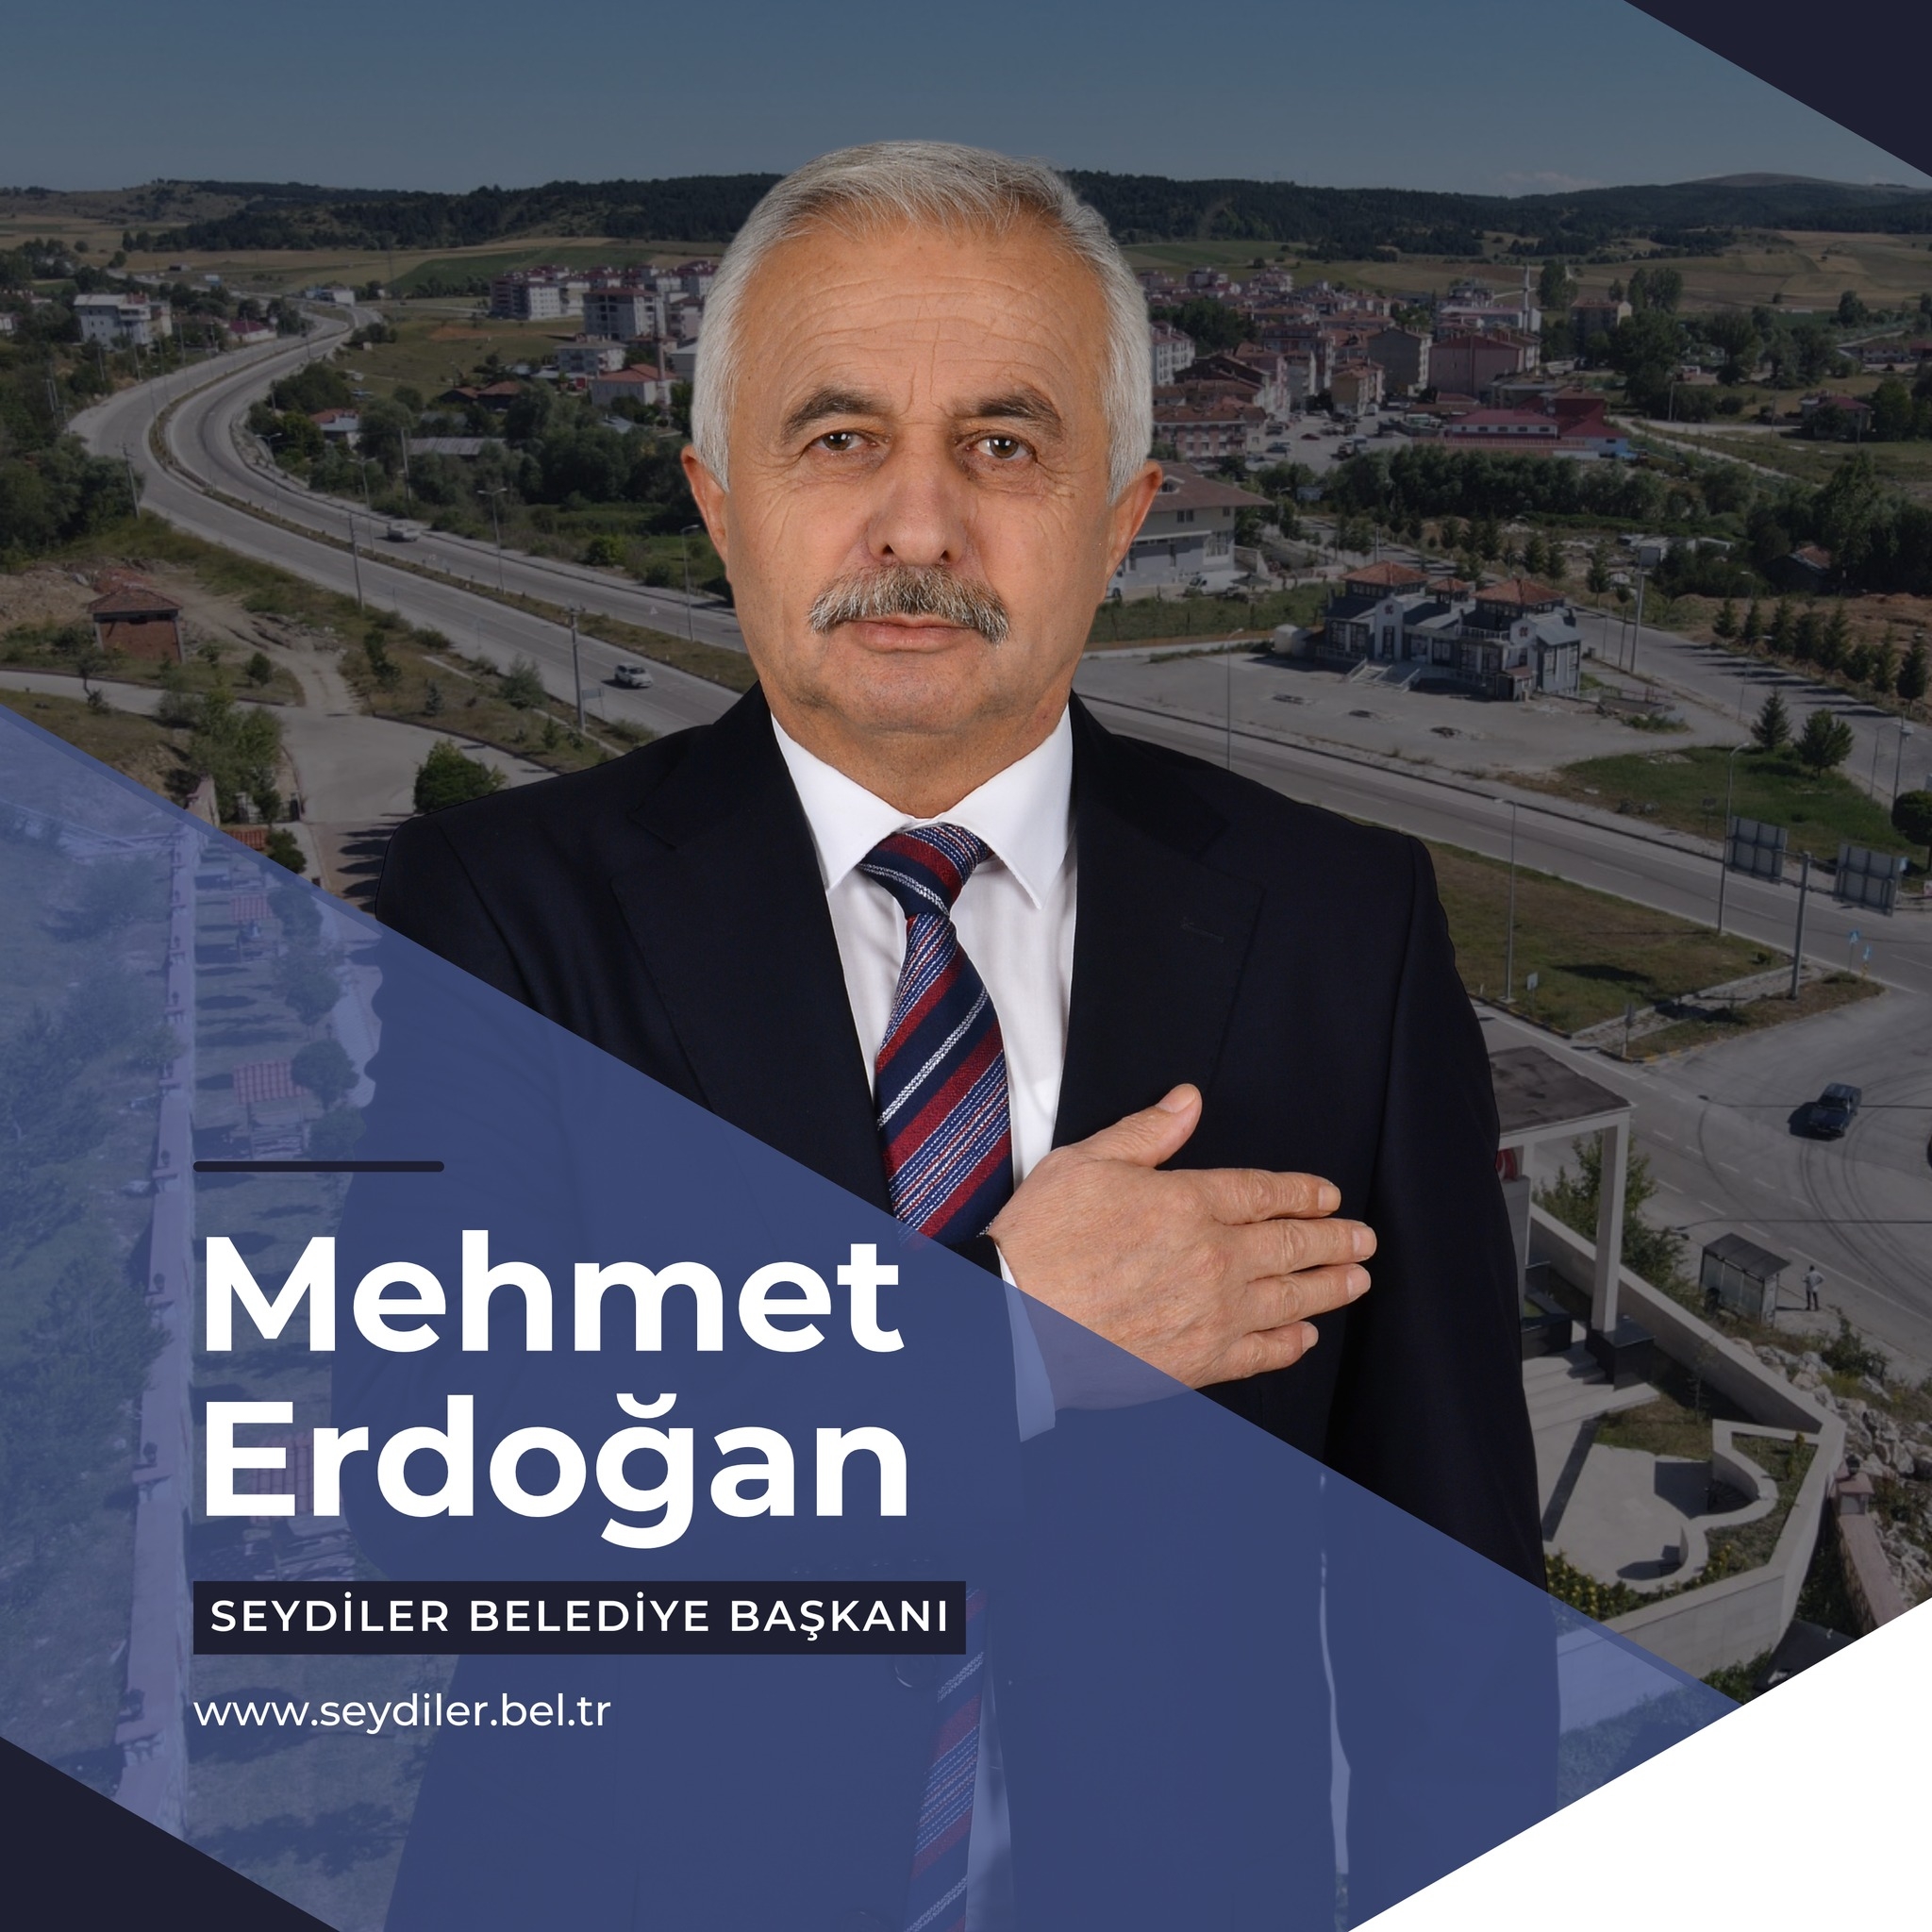 Mehmeterdogan